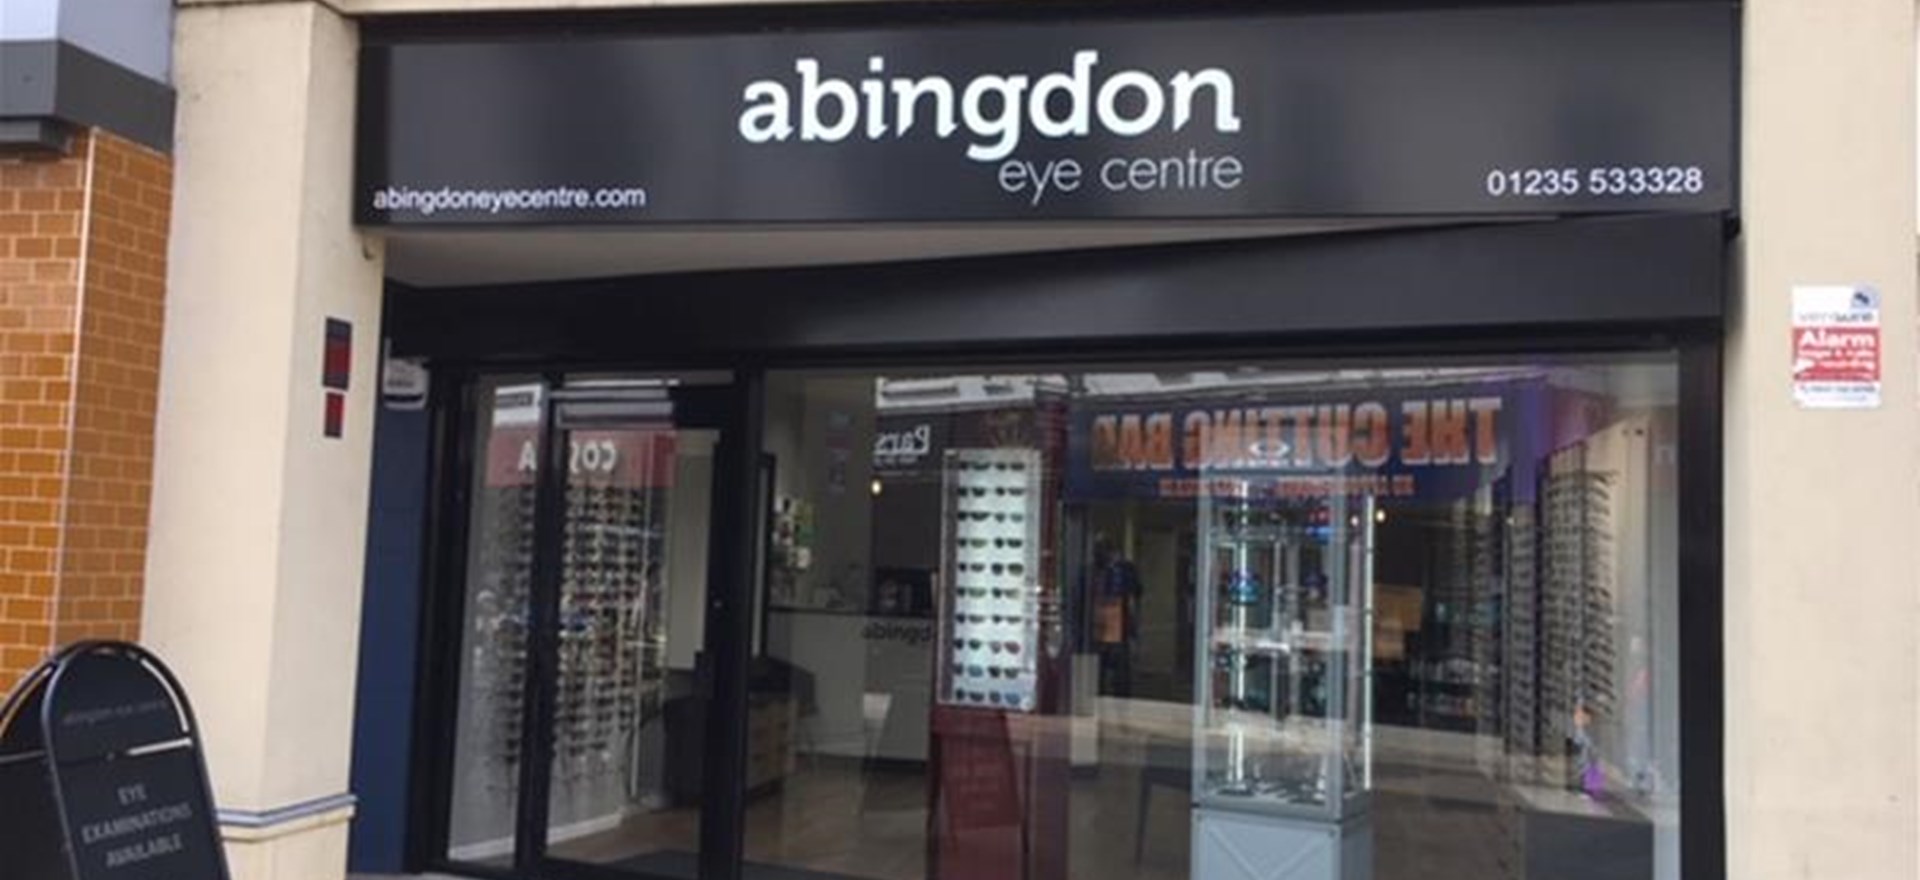 Abingdon Eye Centre Exterior Shop Sigage Oxford